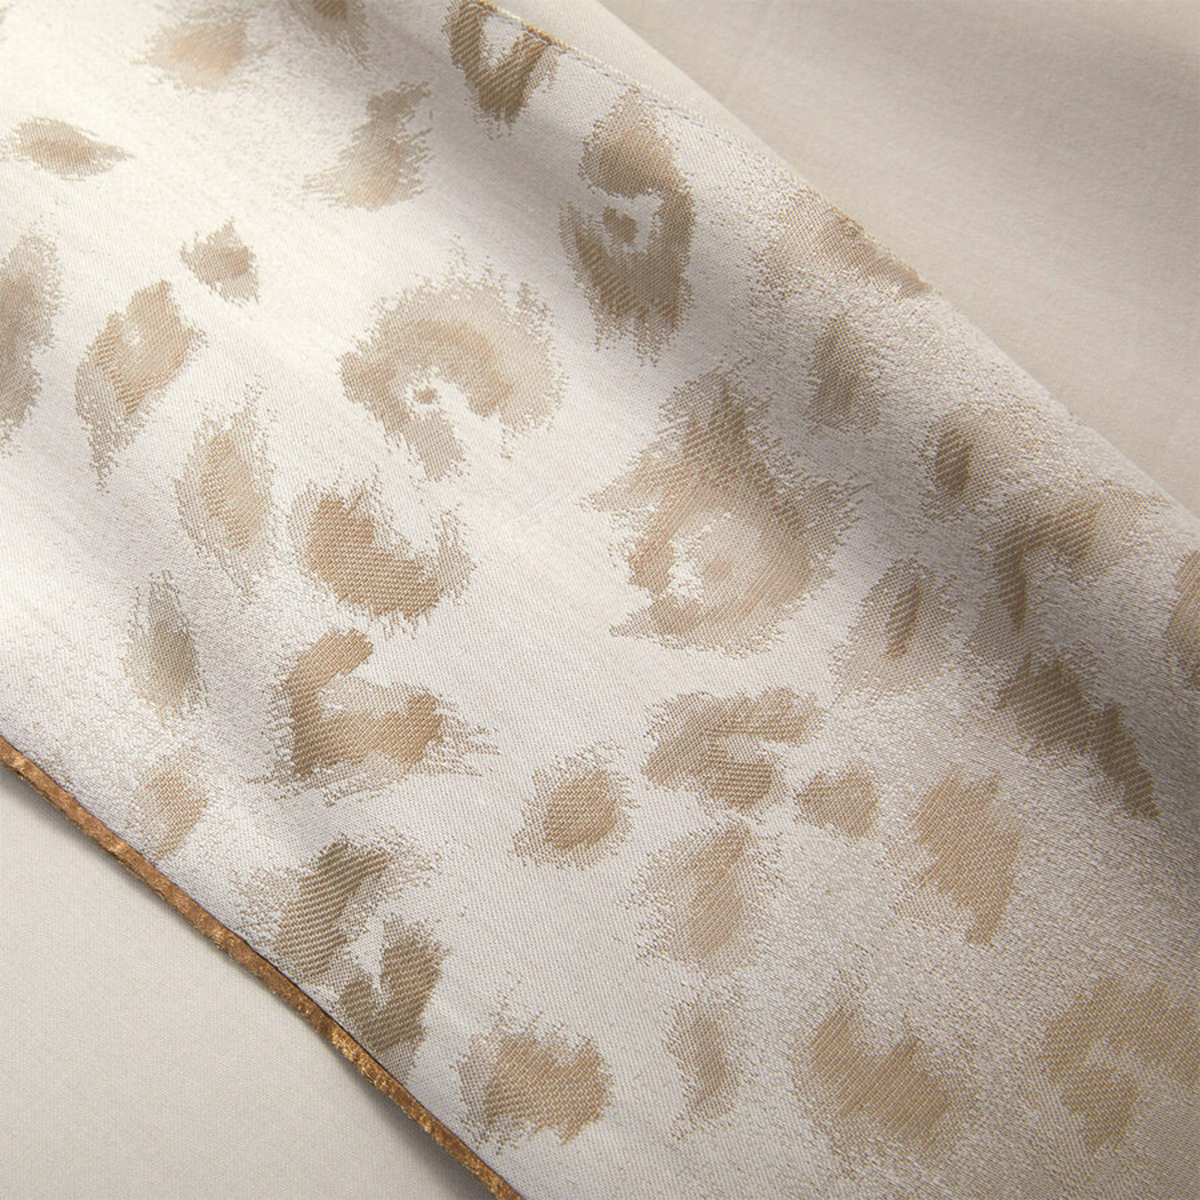 Flat Sheet Detail of Yves Delorme Tioman Bedding